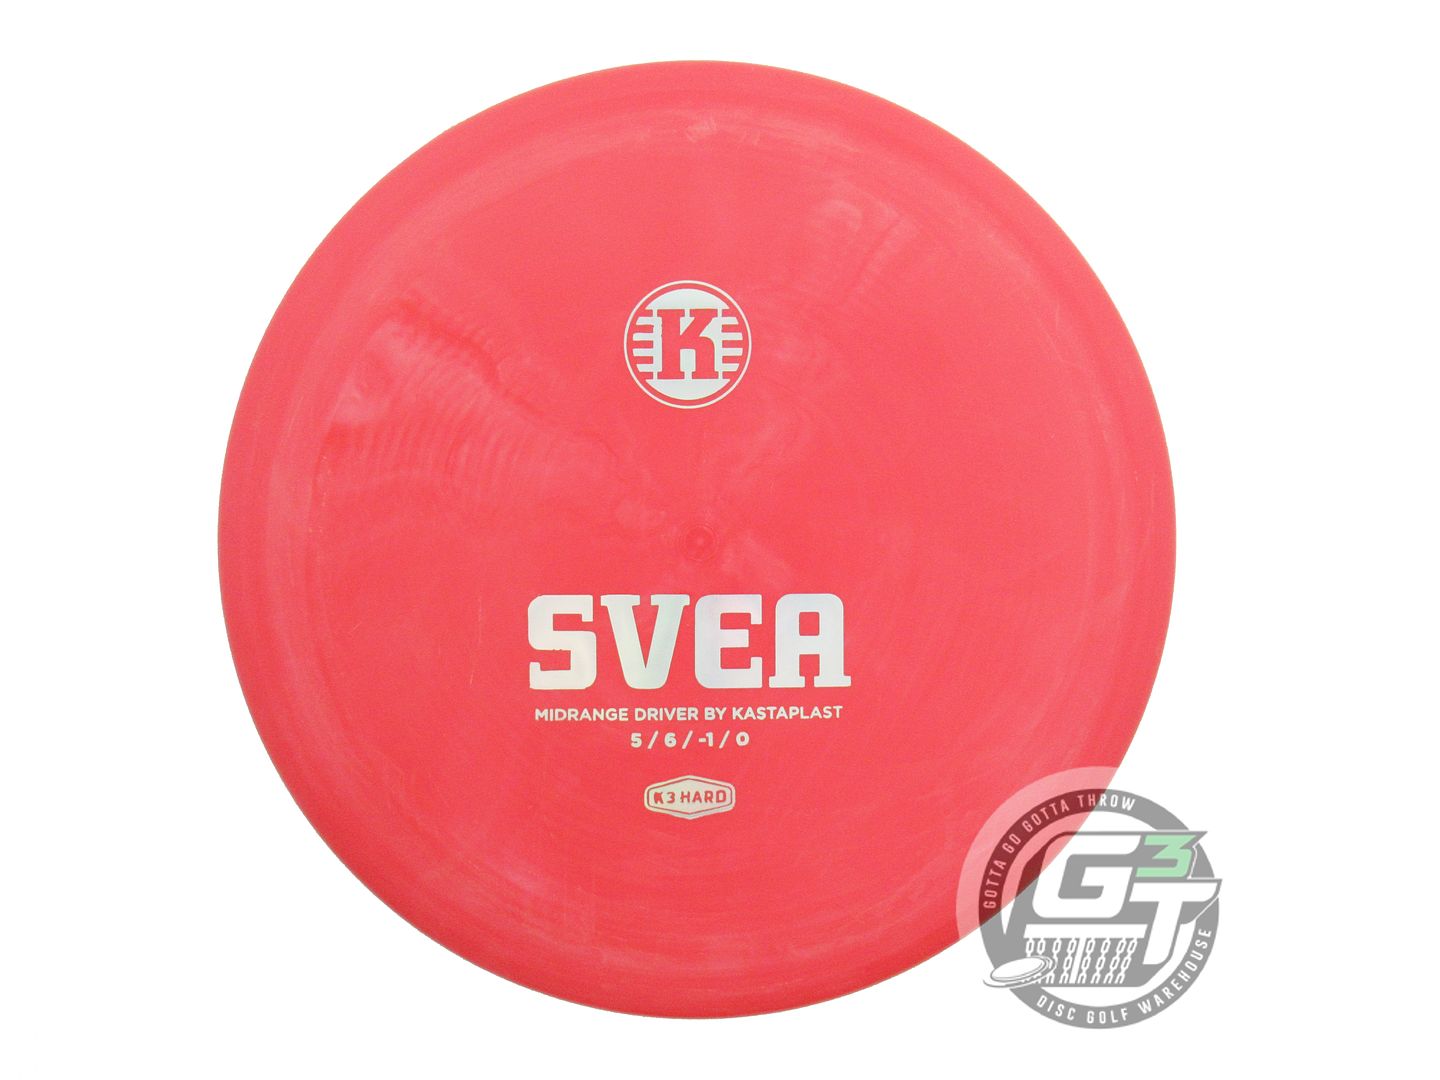 Kastaplast K3 Hard Svea Midrange Golf Disc (Individually Listed)